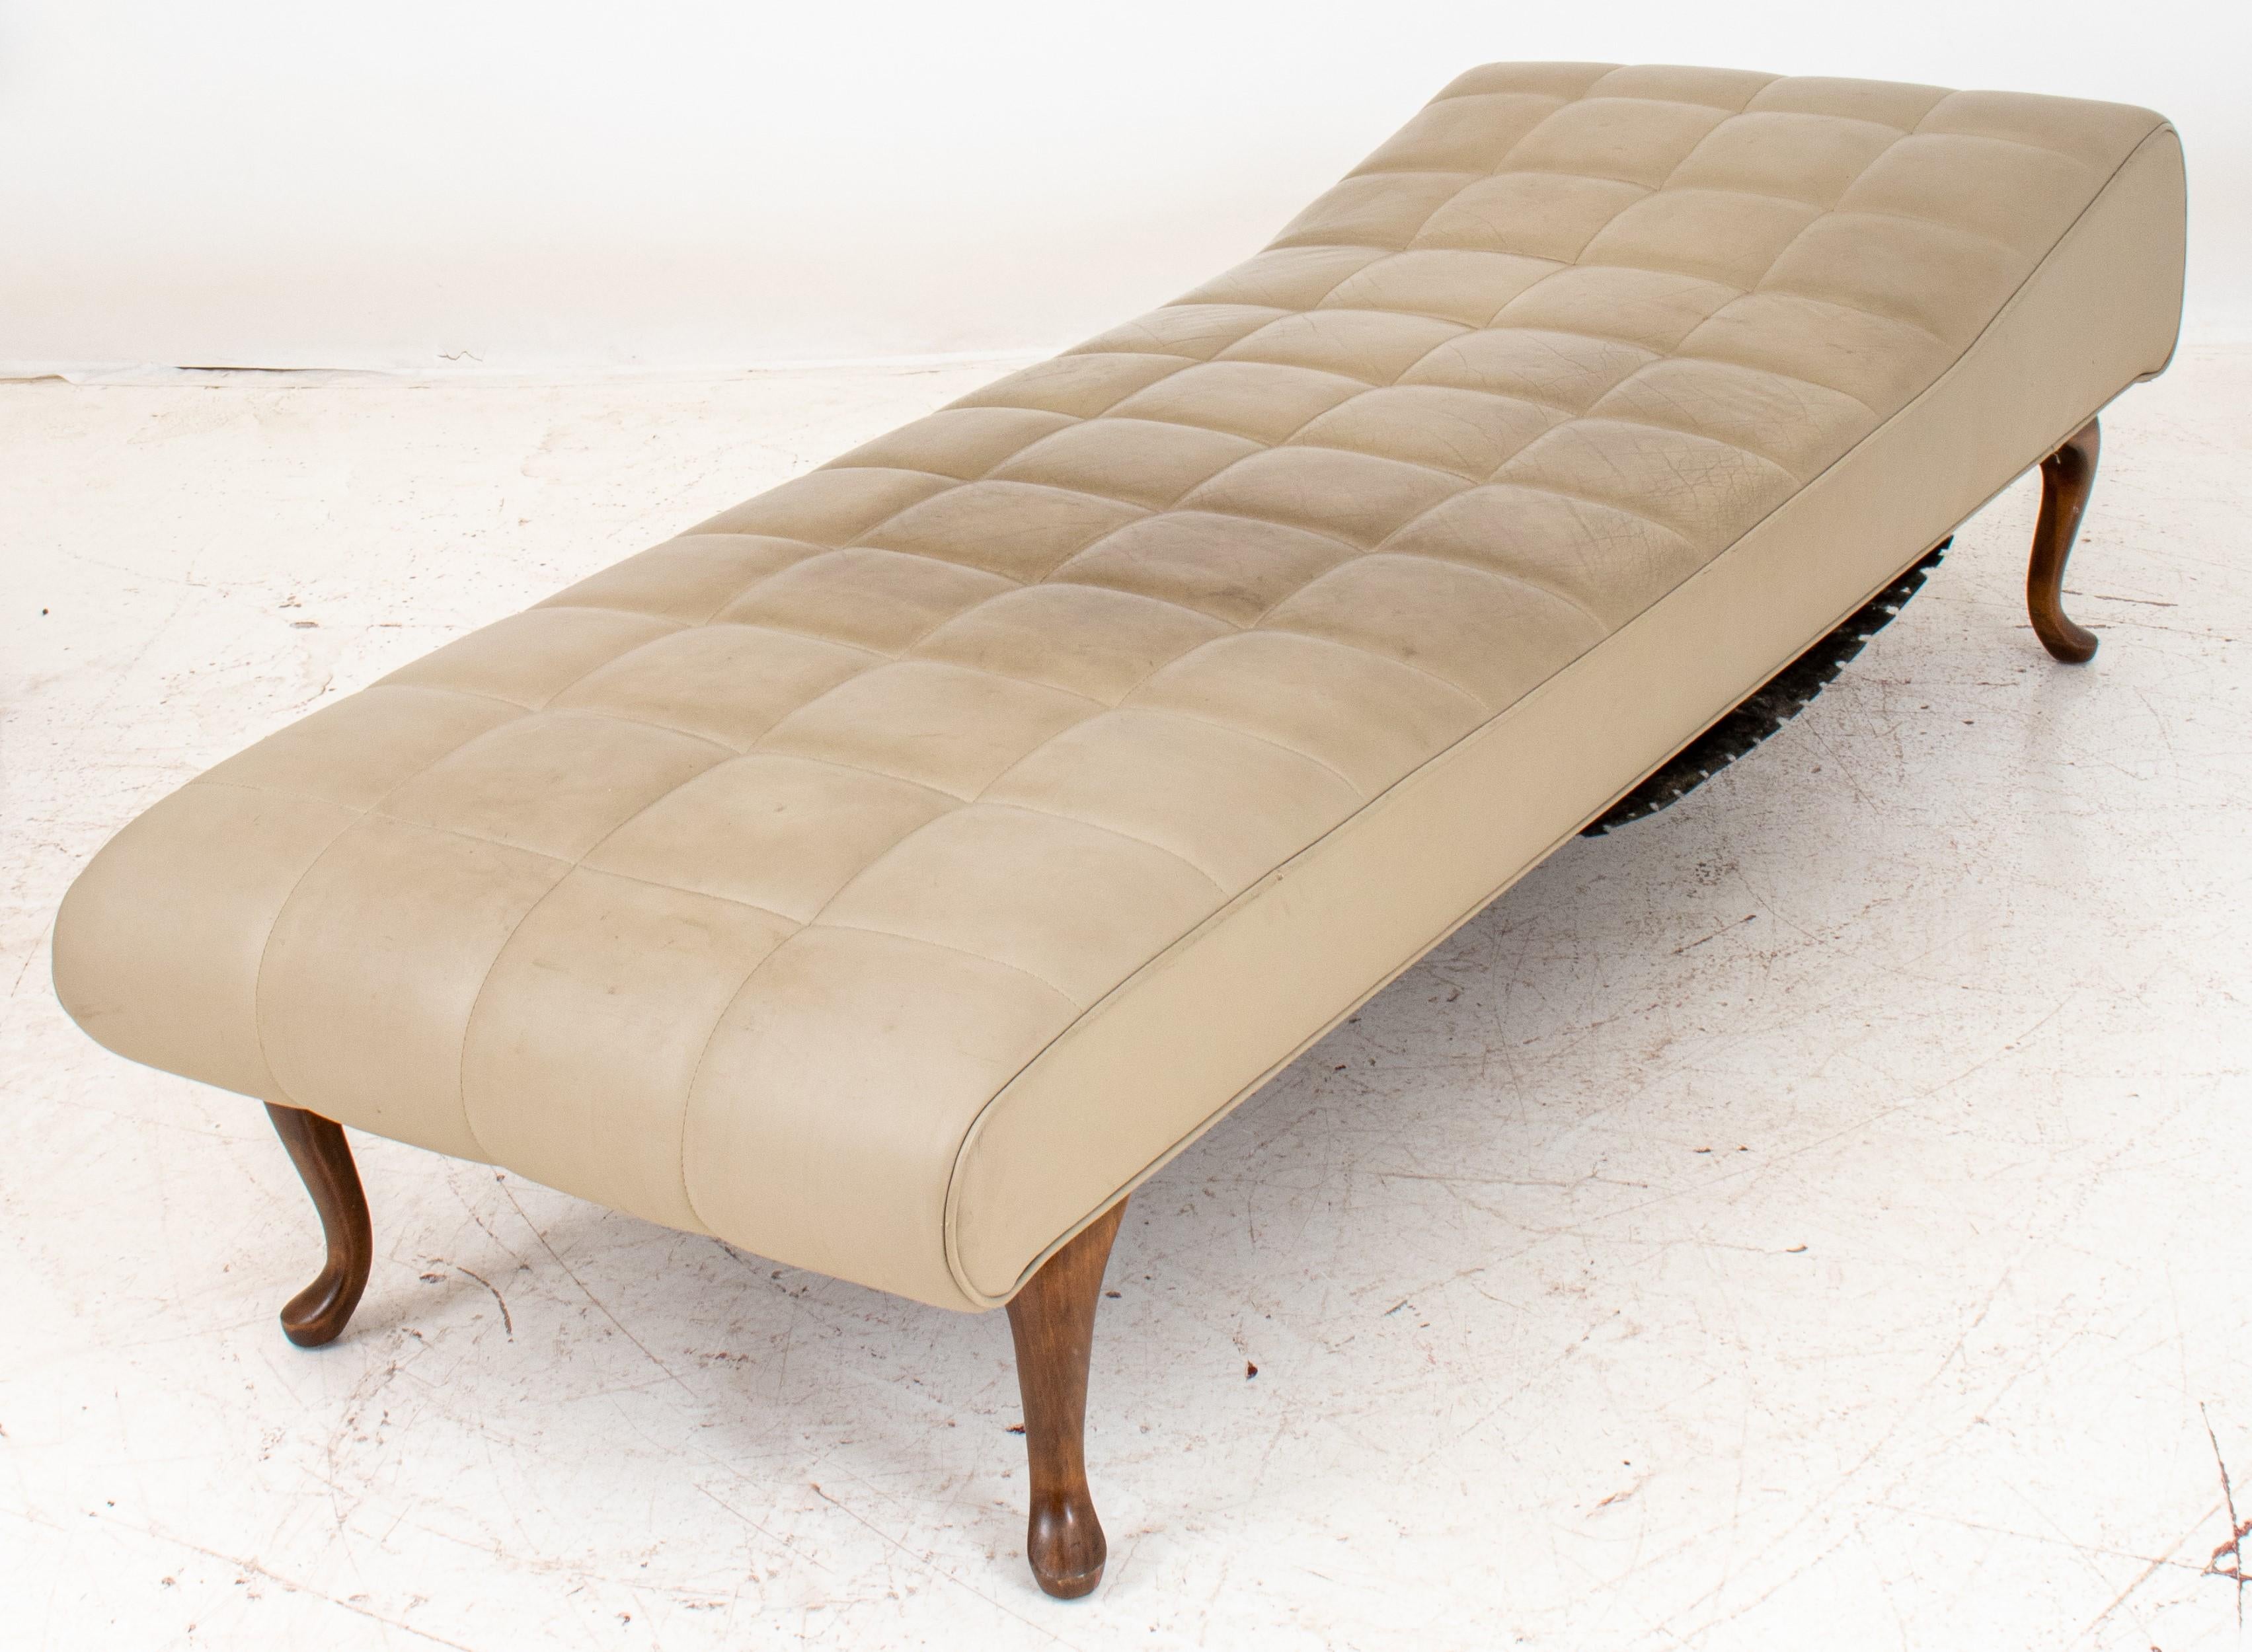 
Il semble que vous ayez décrit un meuble polyvalent qui peut servir de canapé de récupération, de lit de jour ou de chaise longue. Voici les détails :

Style : La description ne précise pas de style particulier, mais elle mentionne des pieds en